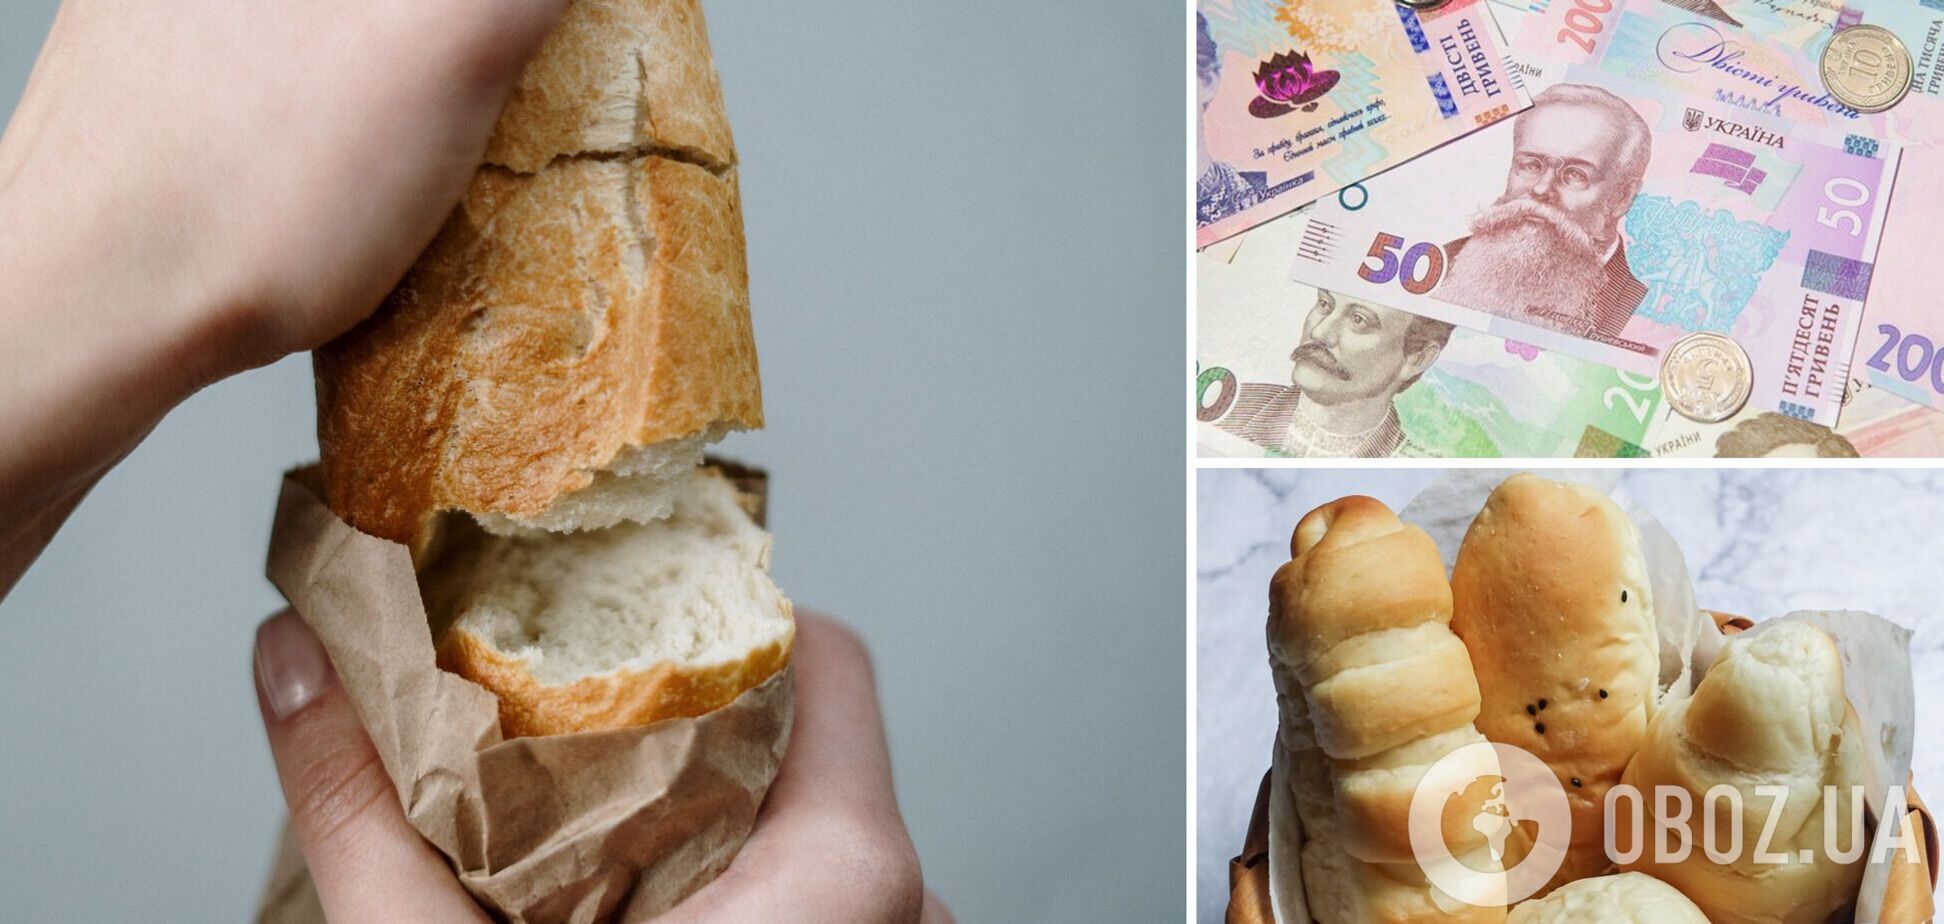 Цены на хлеб в Украине в 2022 году вырастут